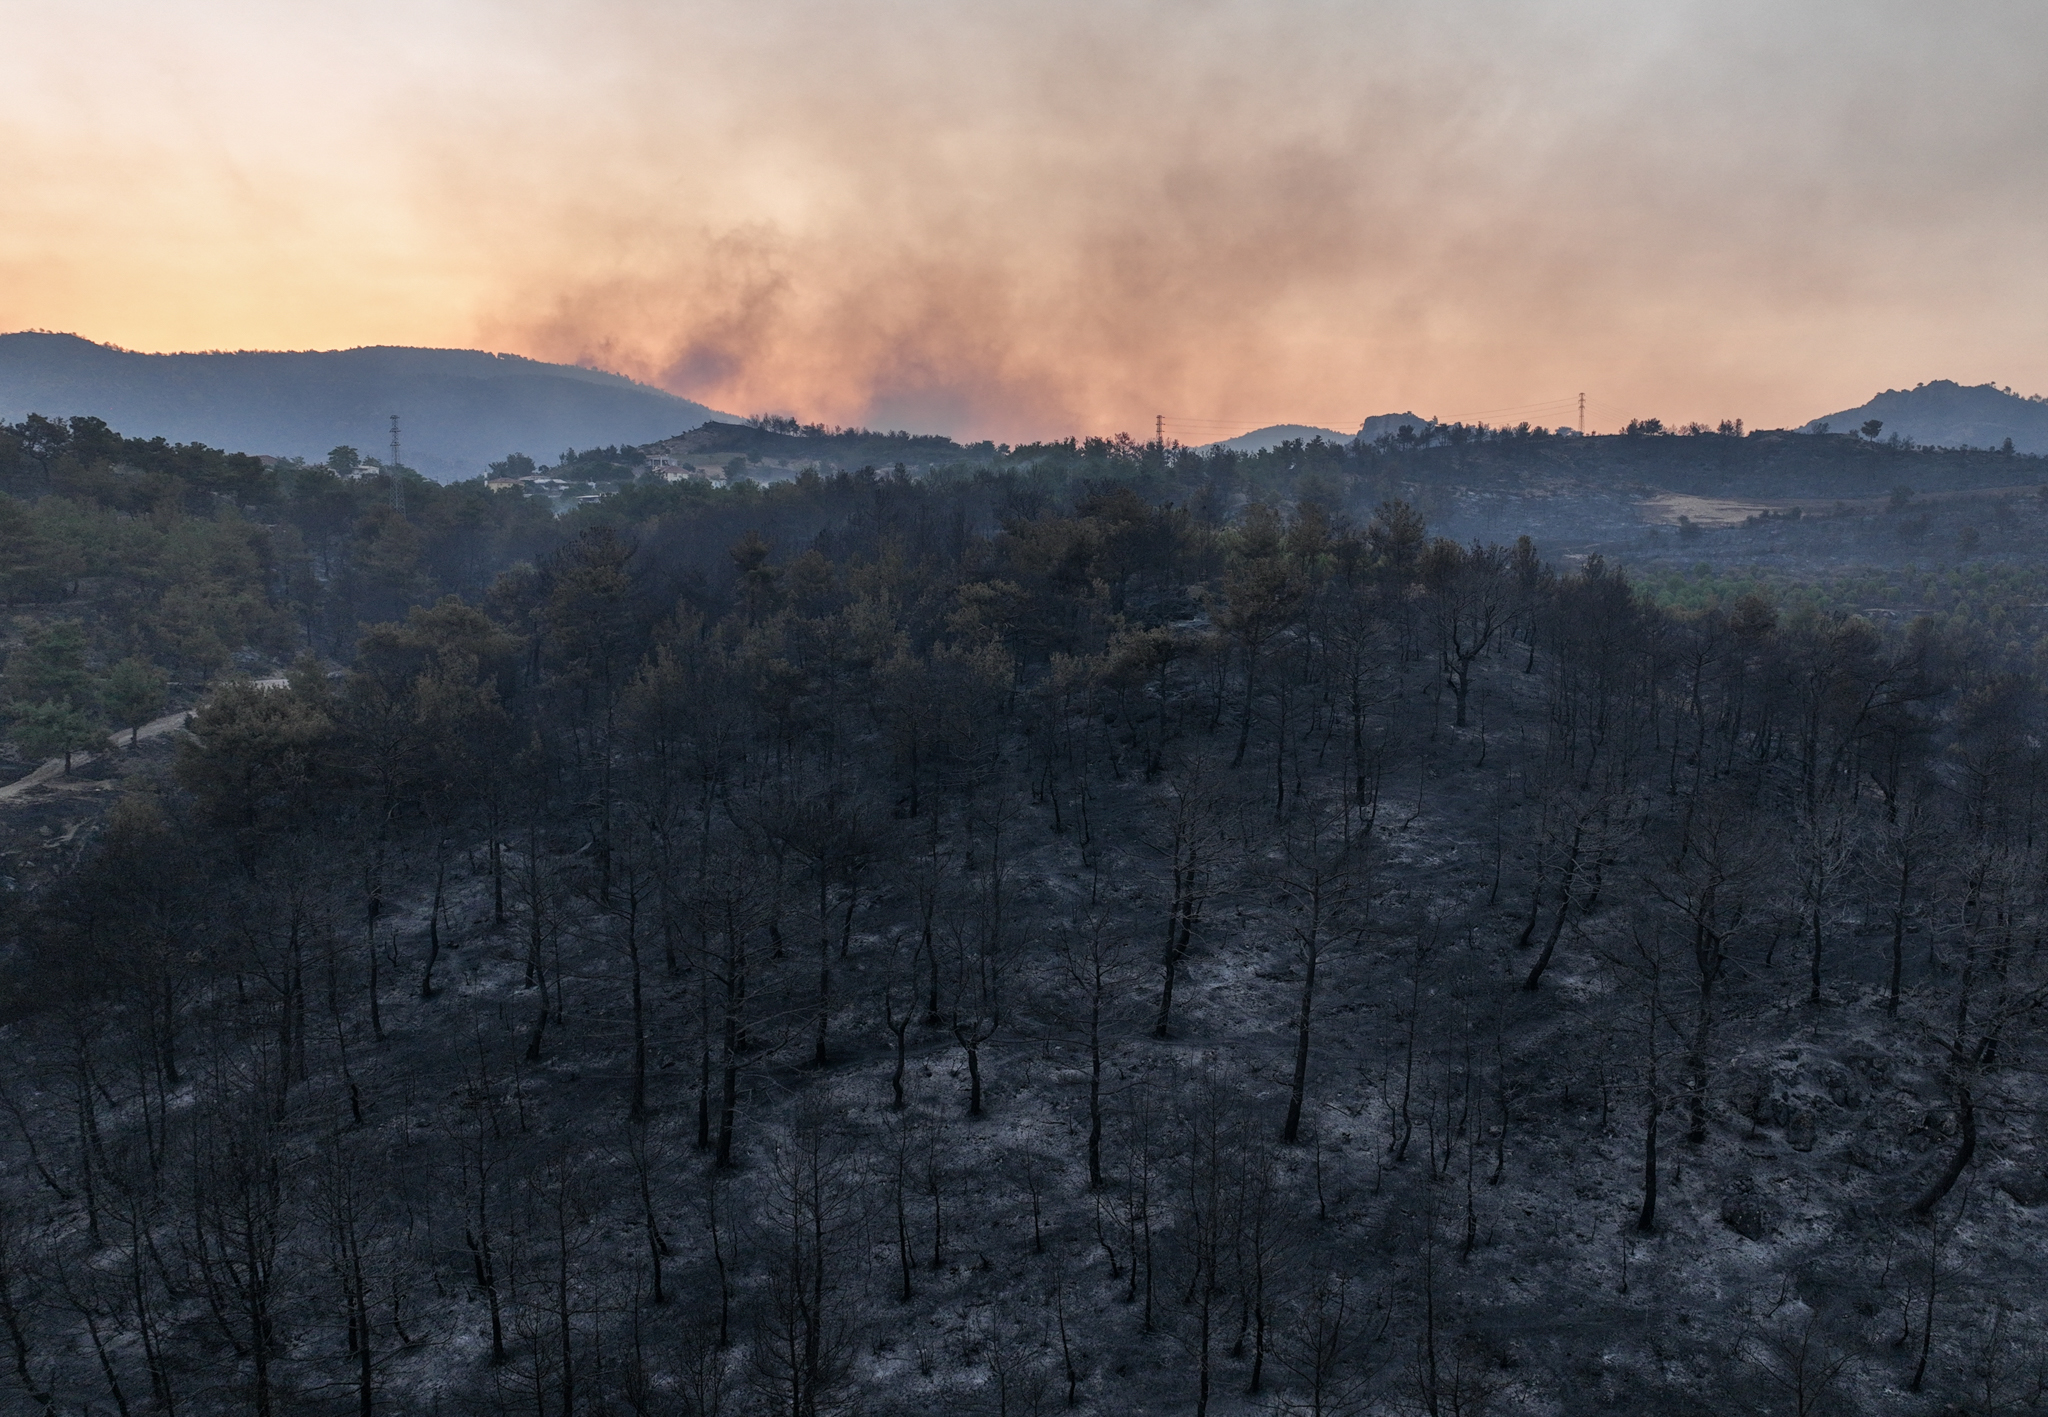 aa-20230823-31975009-31975006-efforts-to-extinguish-wildfire-continue-in-western-turkiye.jpg